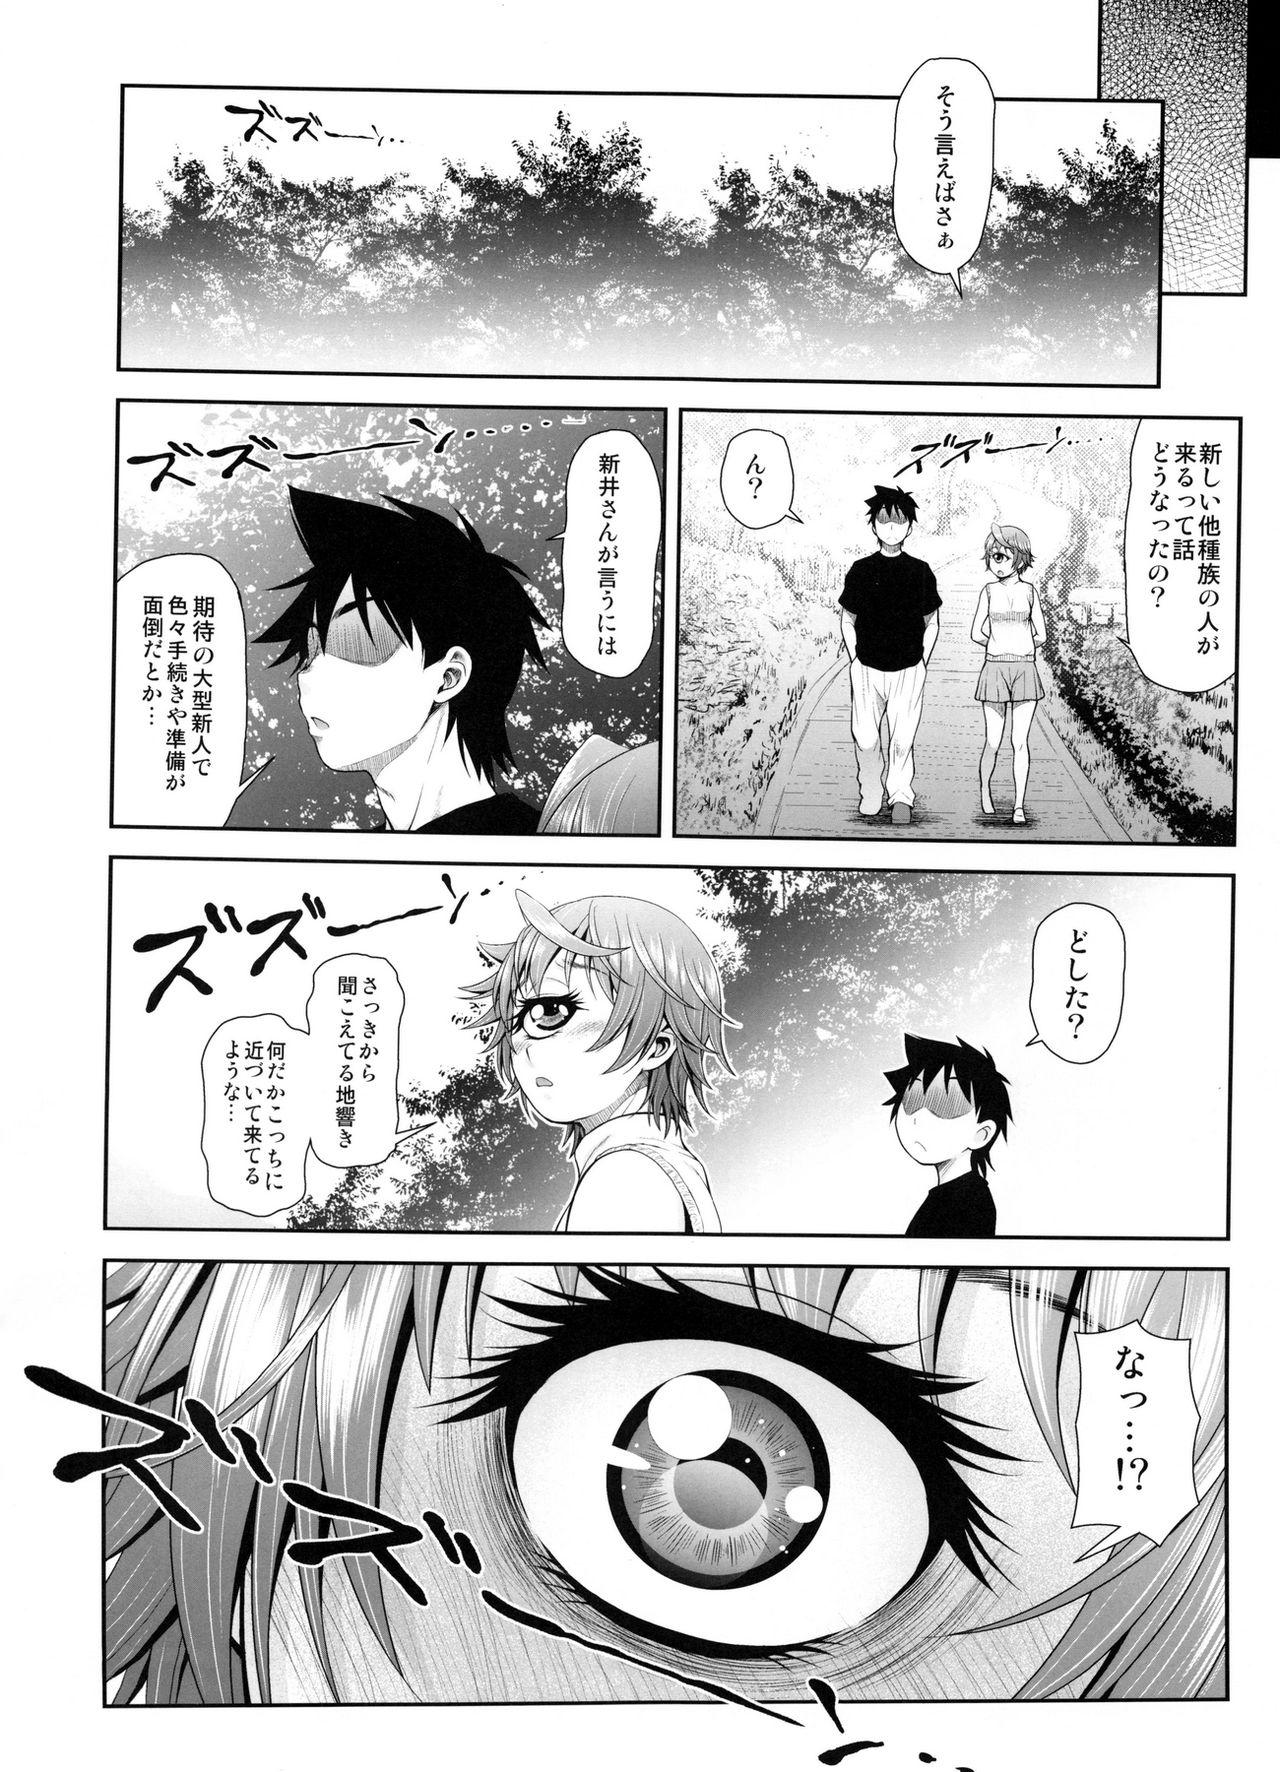 Adolescente Monmusu Biyori - Monster musume no iru nichijou Adolescente - Page 13